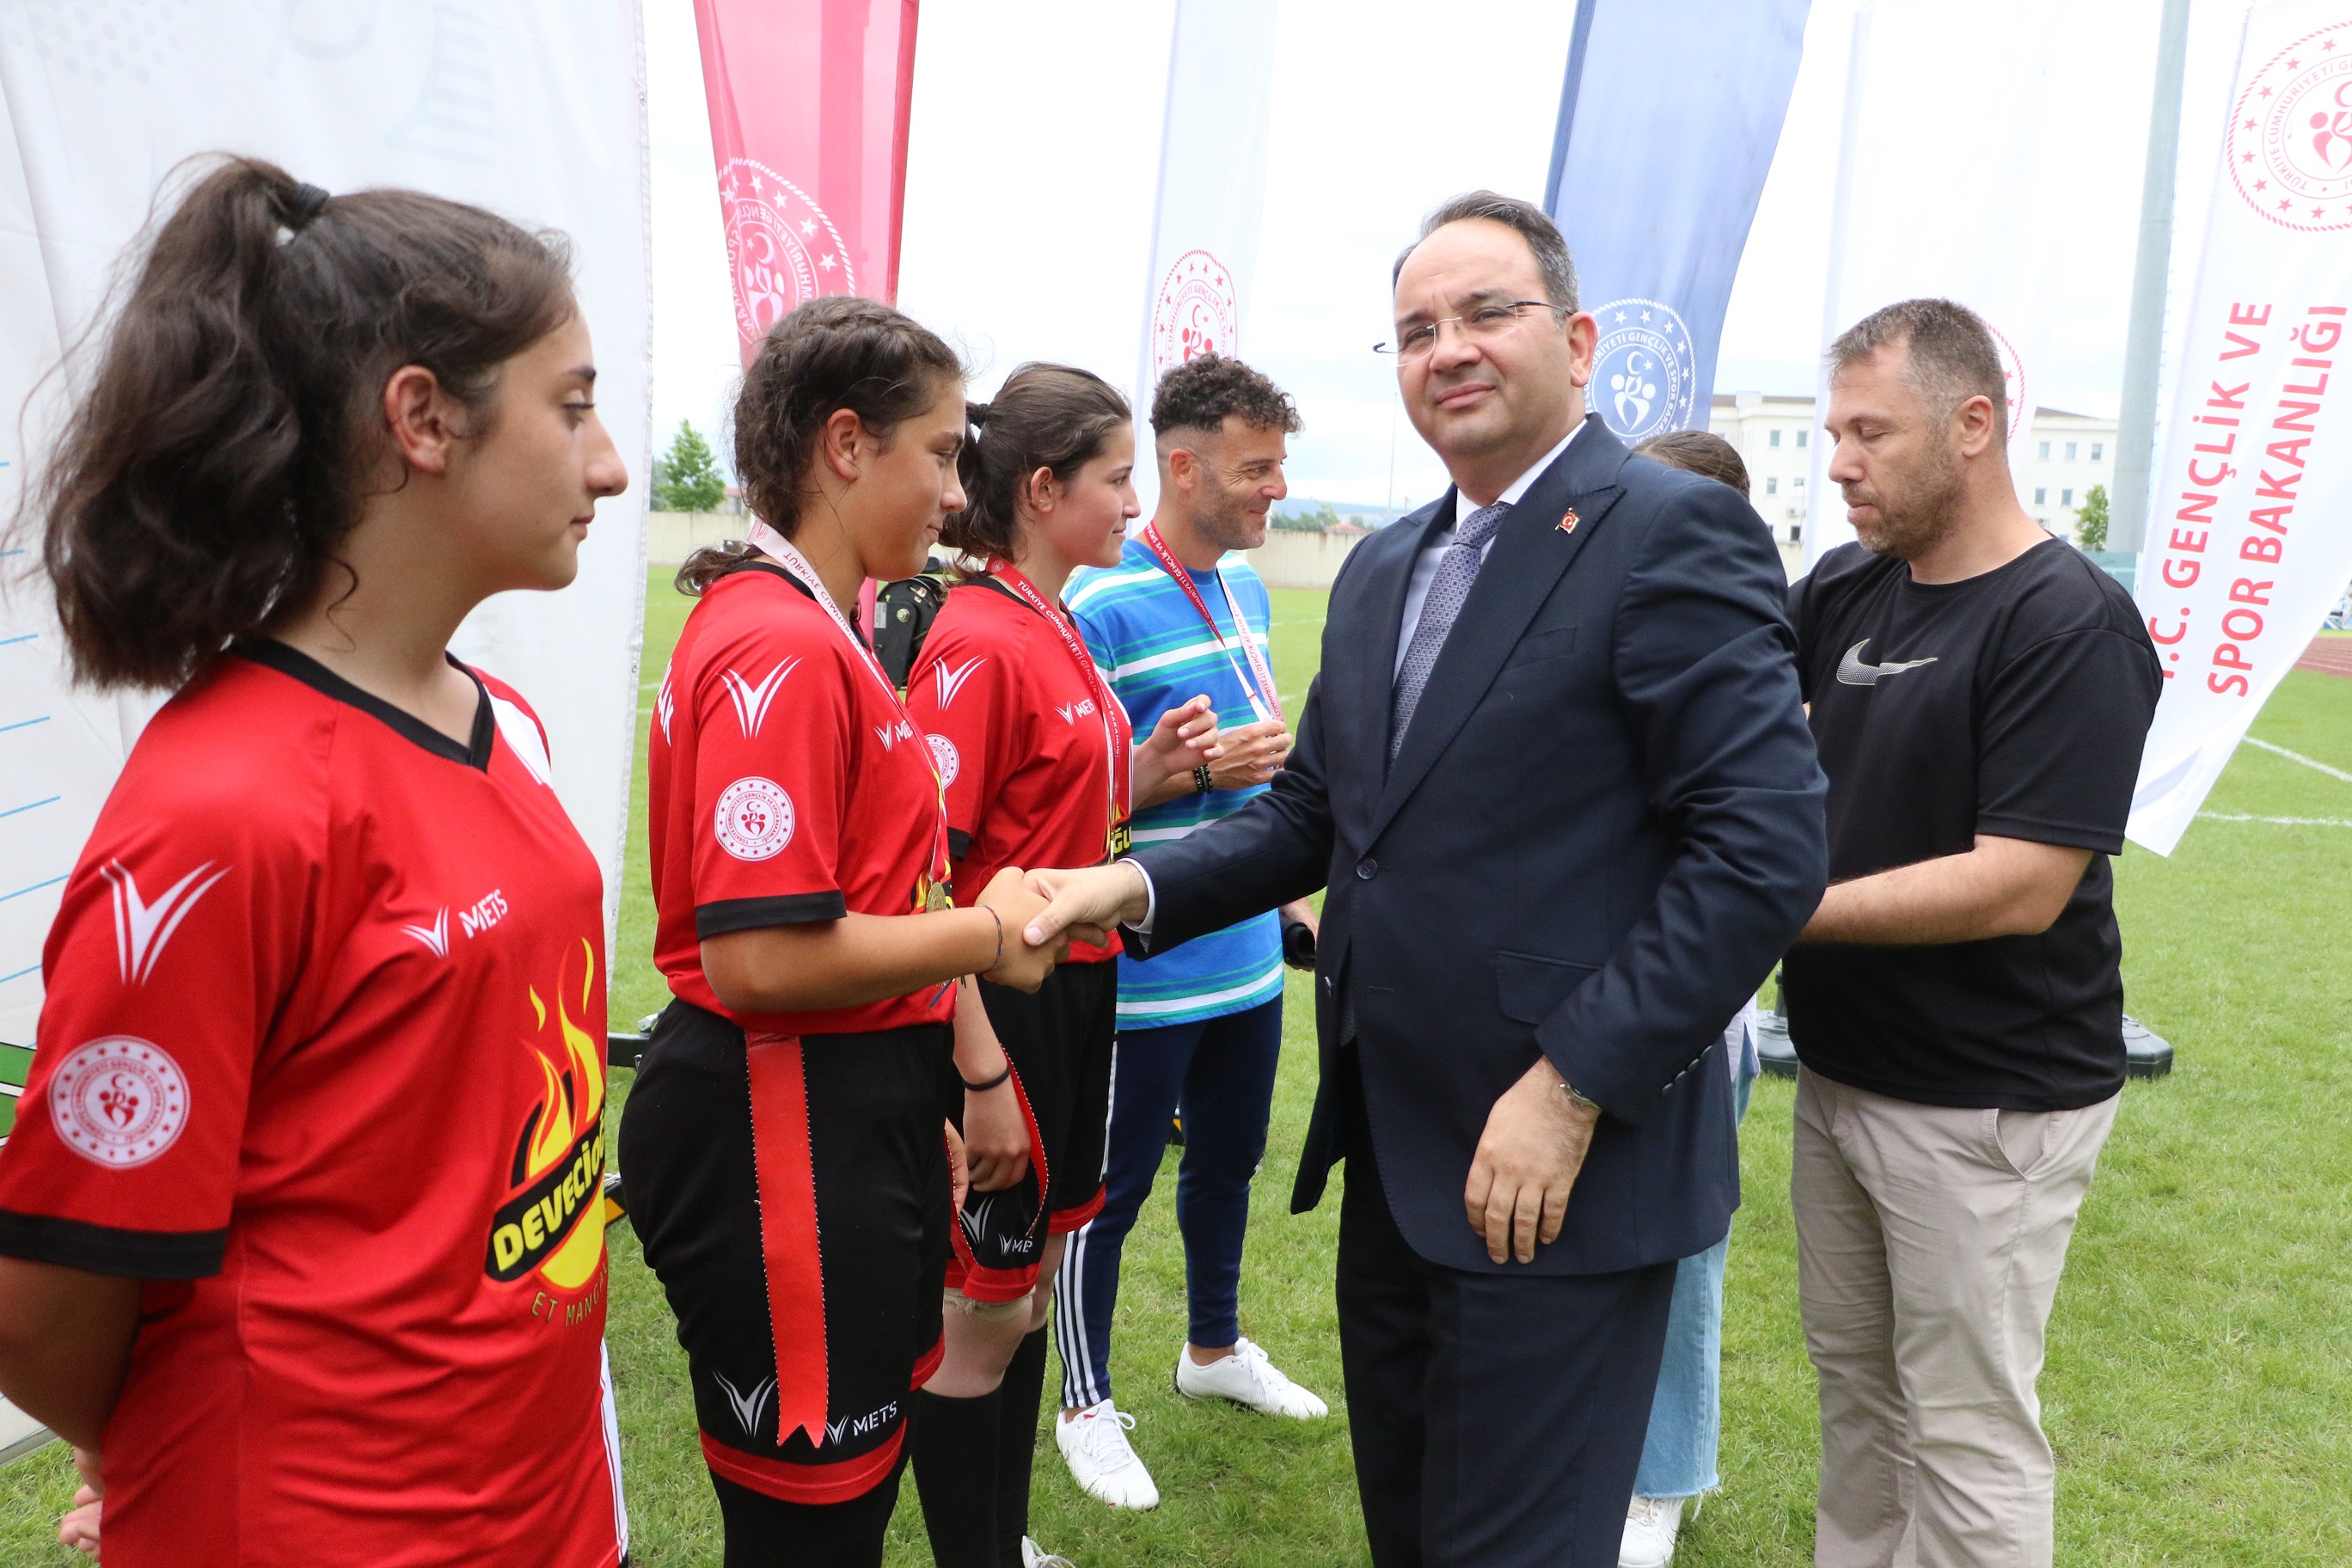 Ragbi Yıldızlar Türkiye Şampiyonası Sona Erdi